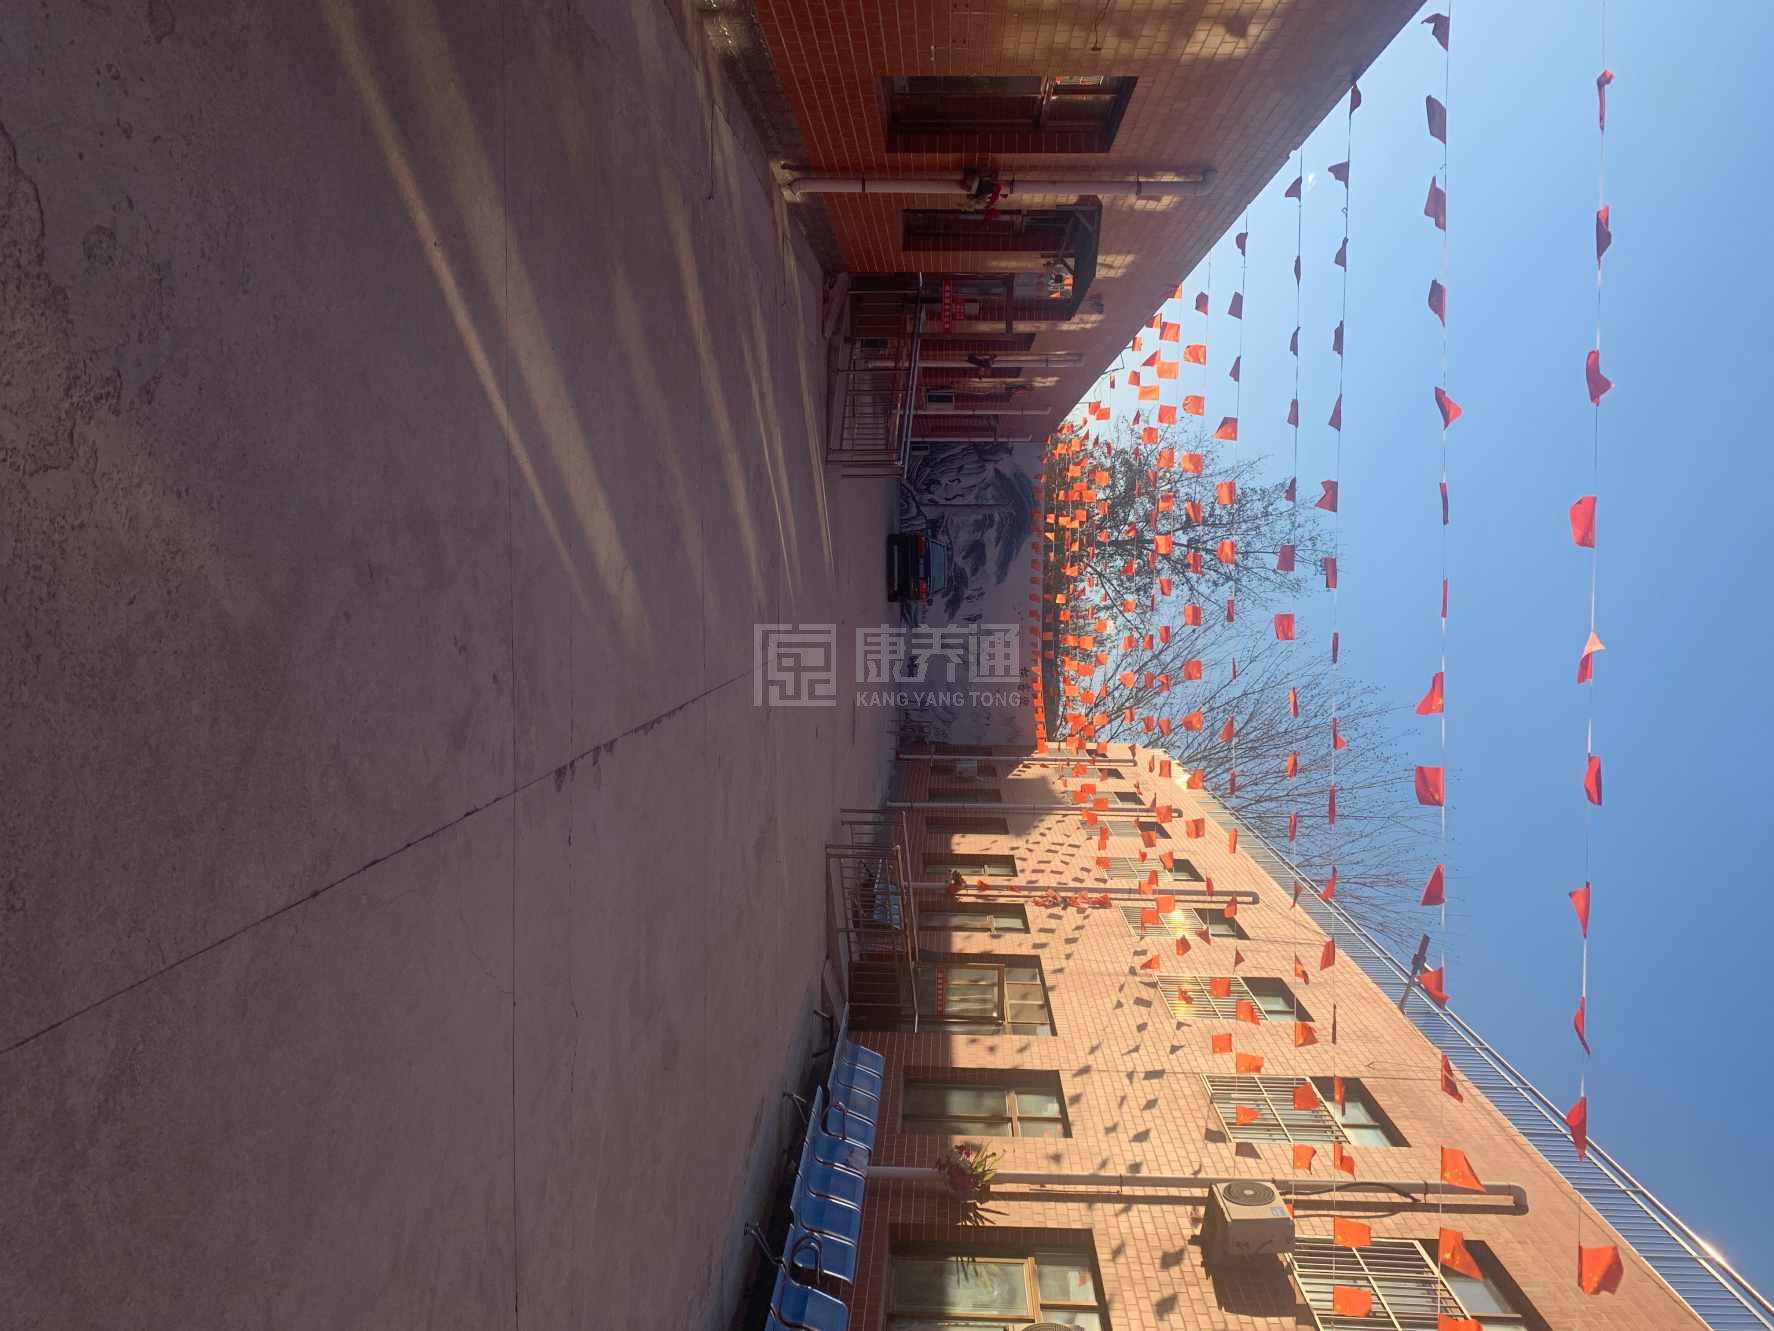 天津市蓟州区阖福源老年公寓环境图-休息区